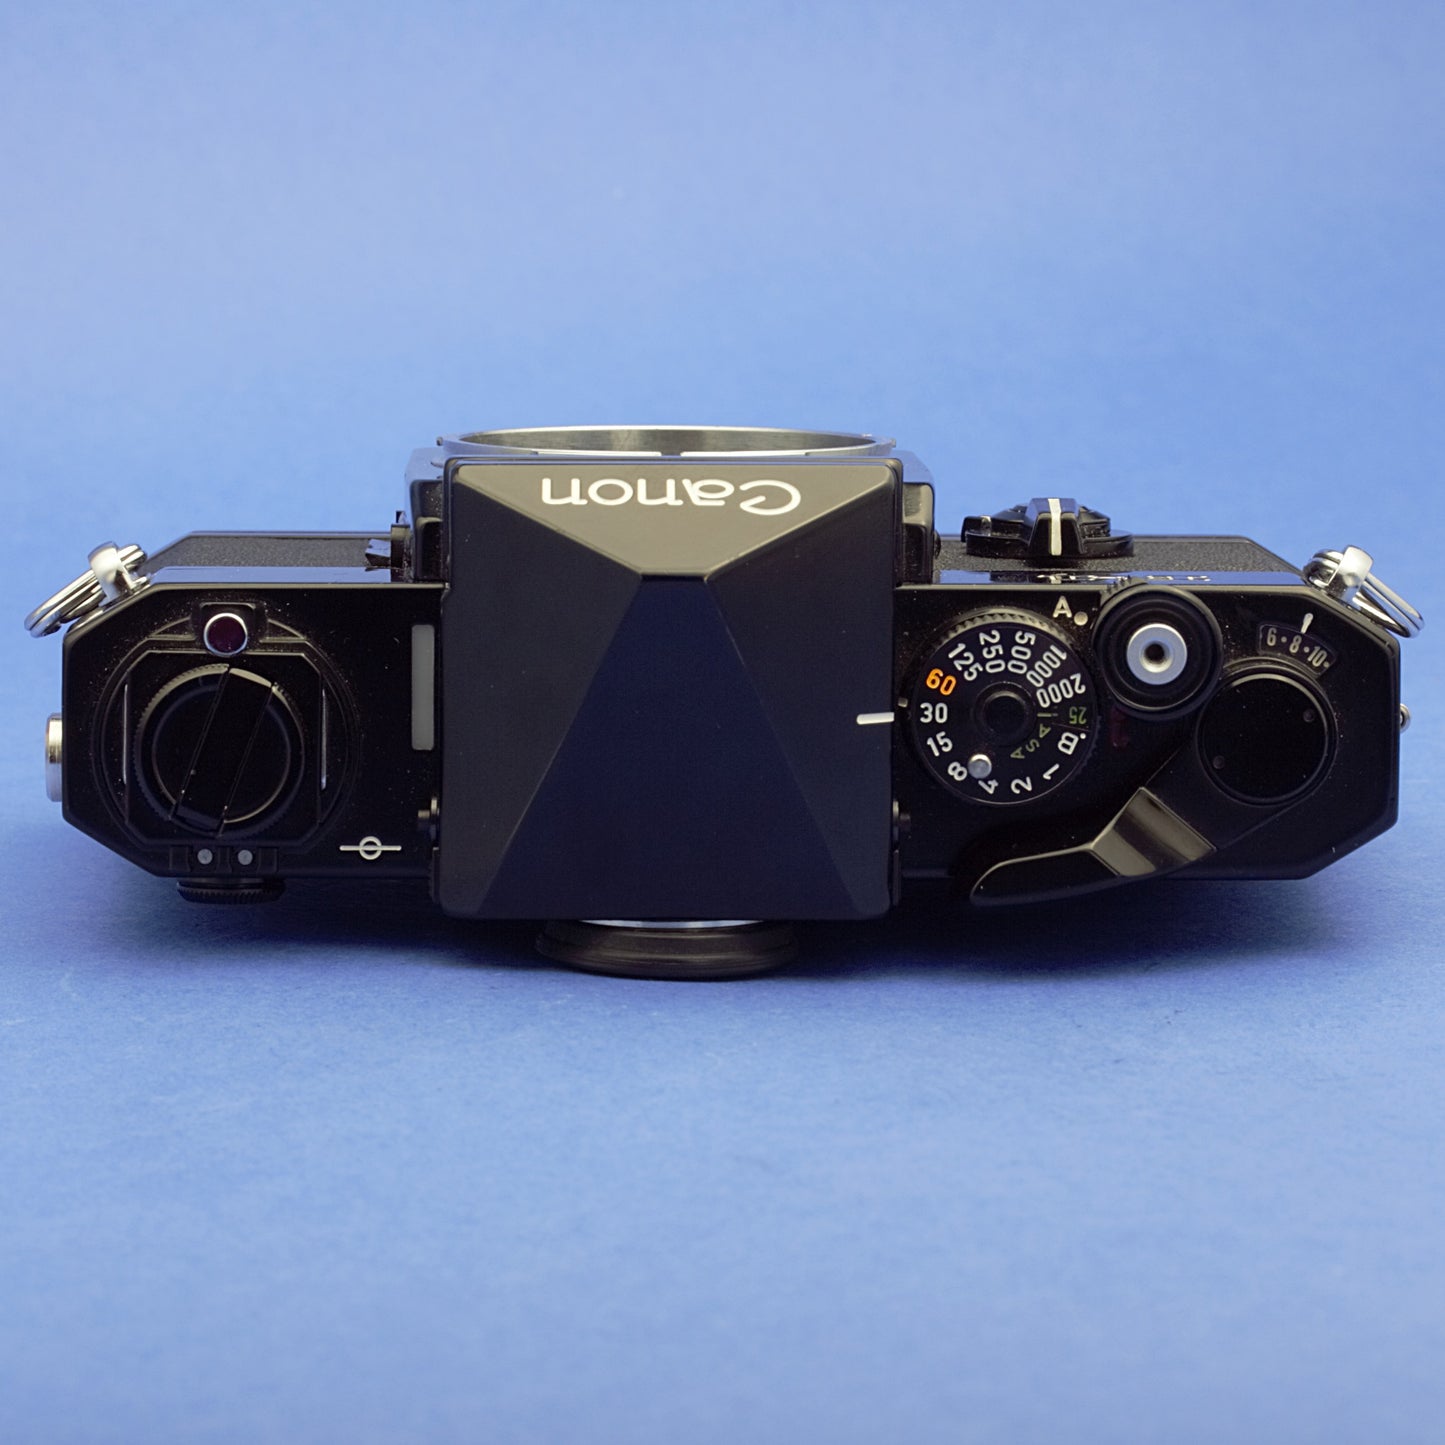 Canon F-1 Film Camera Body Near Mint Condition